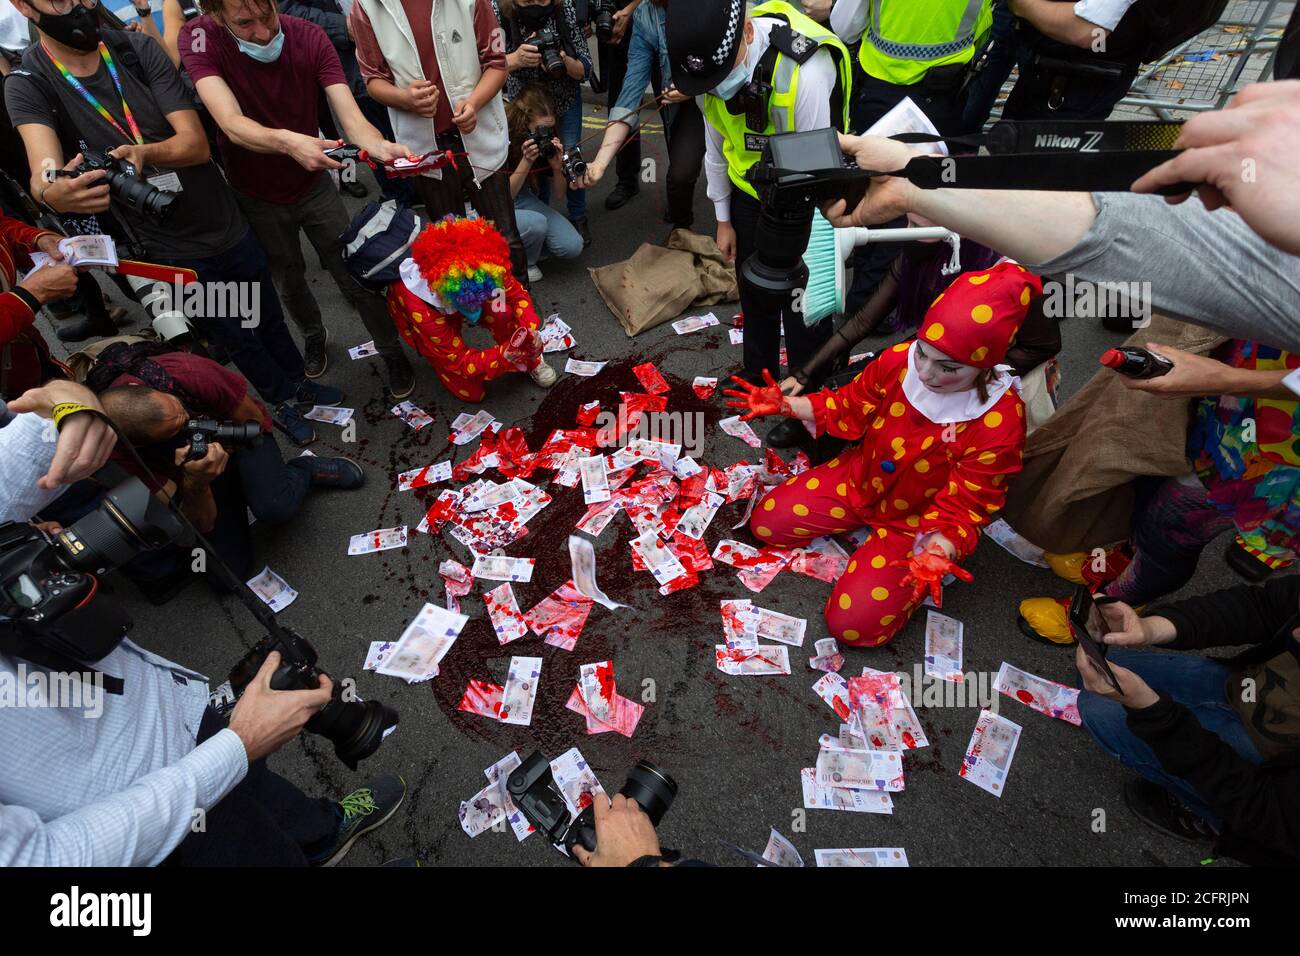 In gefälschtem Blut getränkte Geldmenge, Demonstration des 'Carnival of Corruption' Extinction Rebellion, Whitehall, London, 3. September 2020 Stockfoto